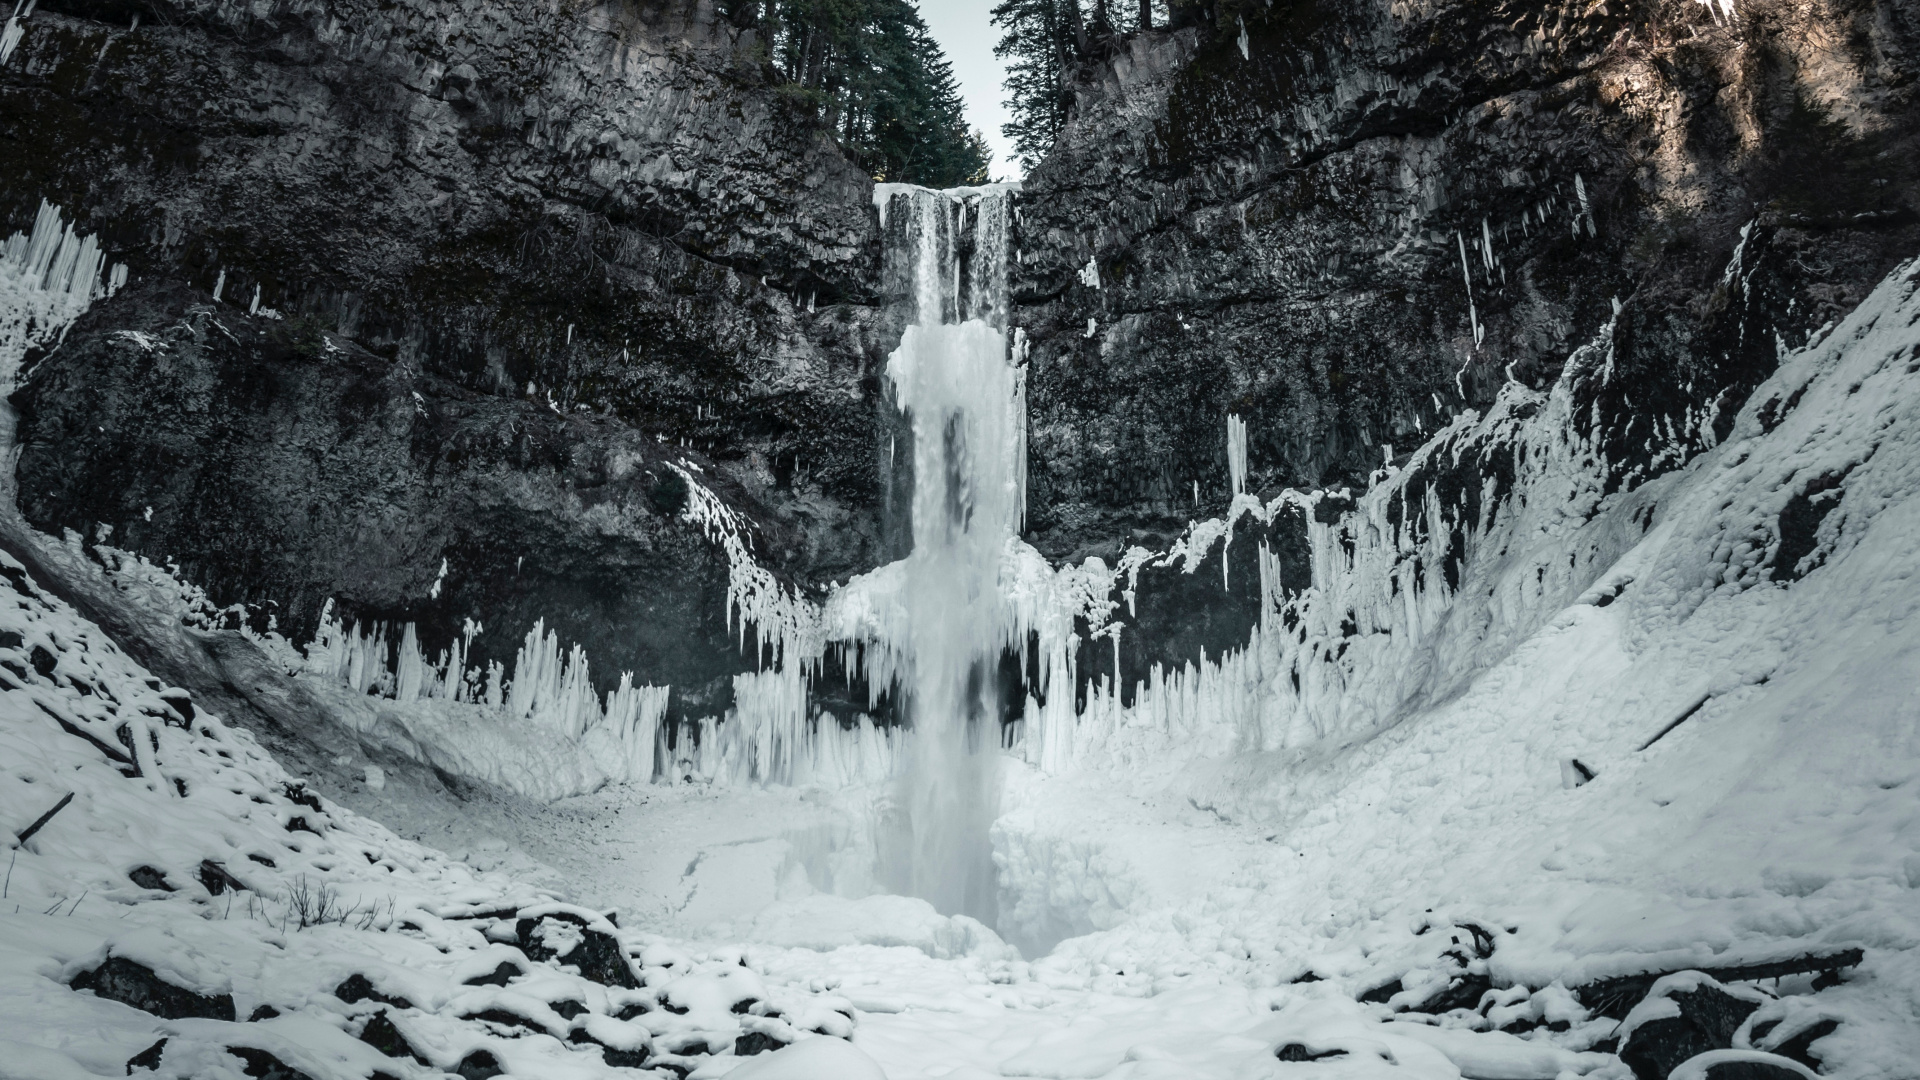 Wasserfall, Natur, Wasser, Winter, Schnee. Wallpaper in 1920x1080 Resolution